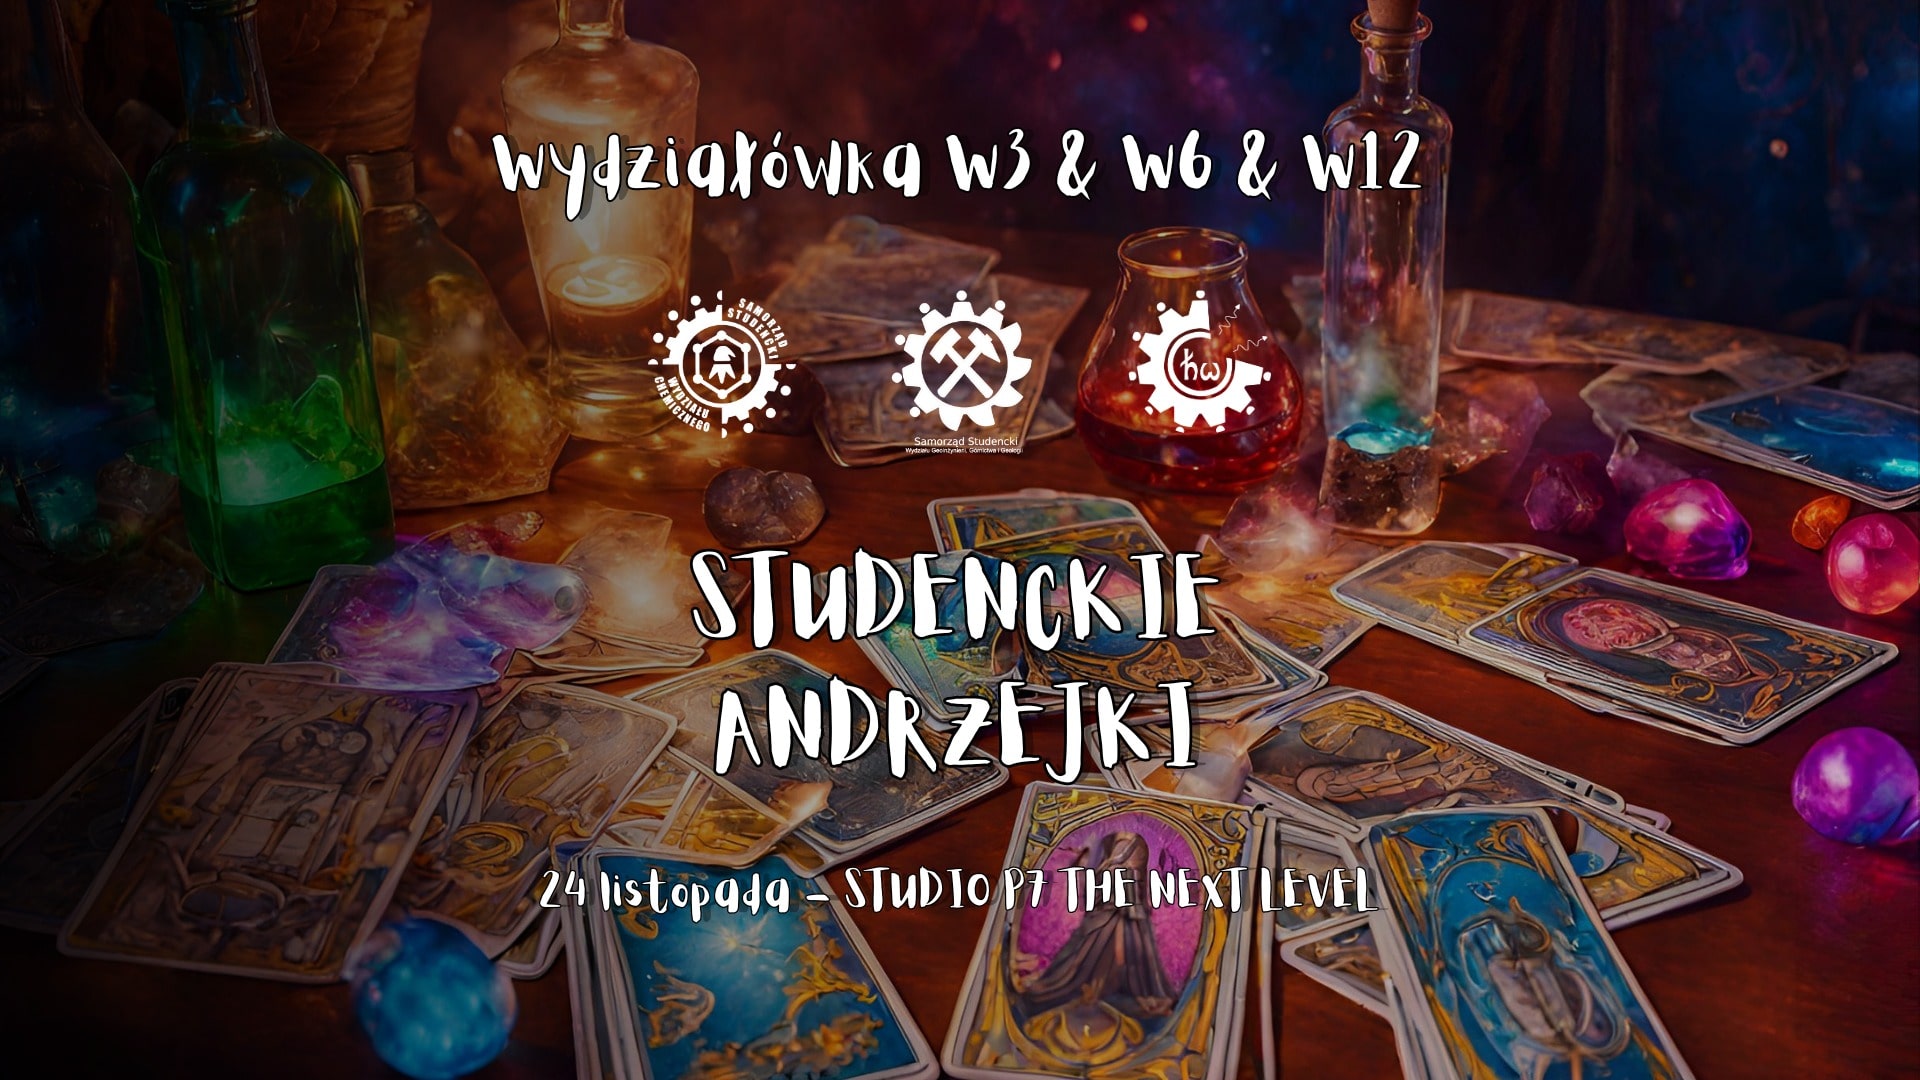 Studenckie Andrzejki – Wydziałówka W3 x W6 x W12N